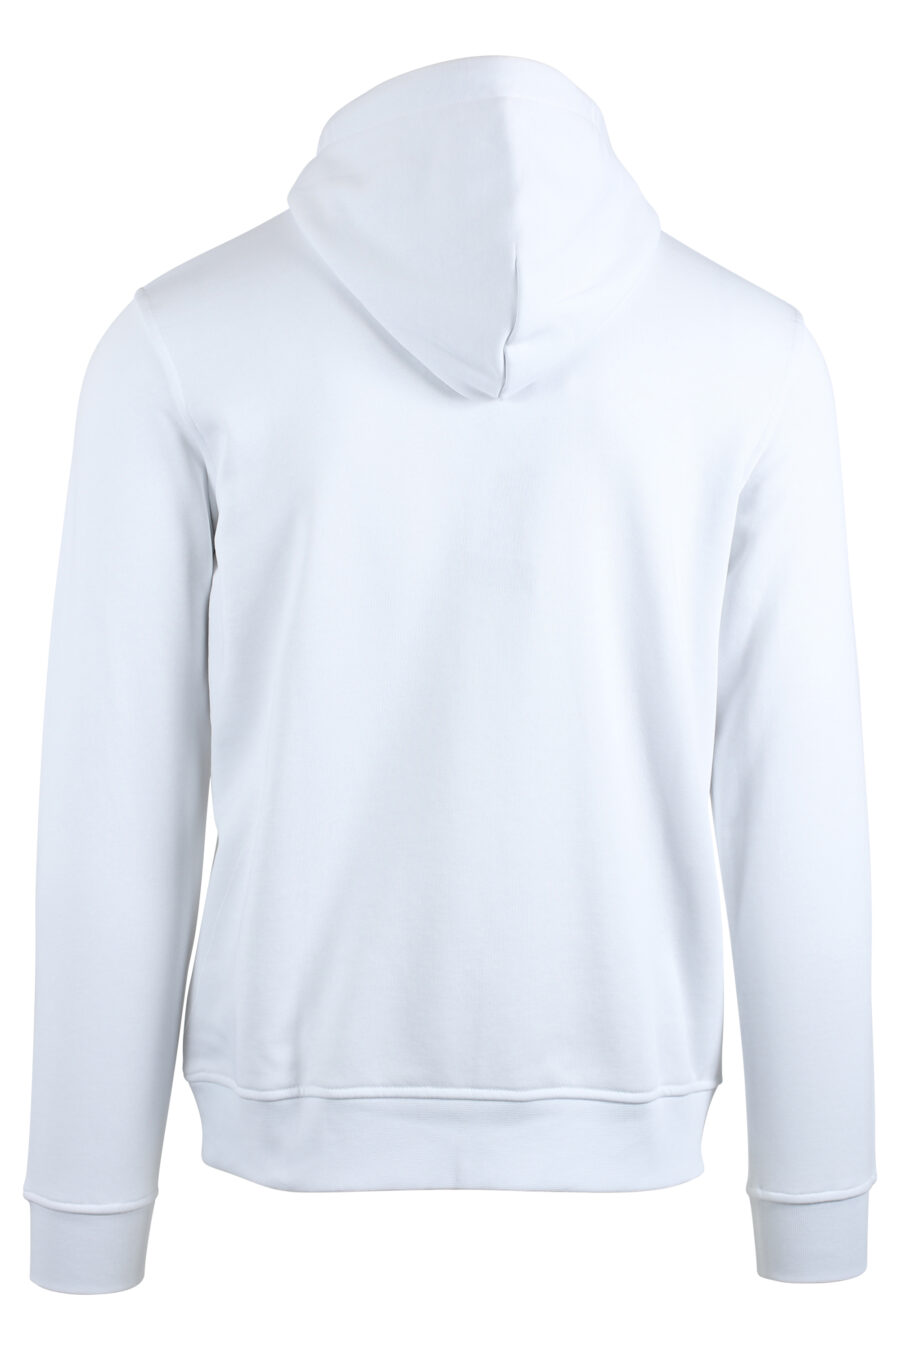 Sudadera blanca con capucha y logo blanco en parche - IMG 4774